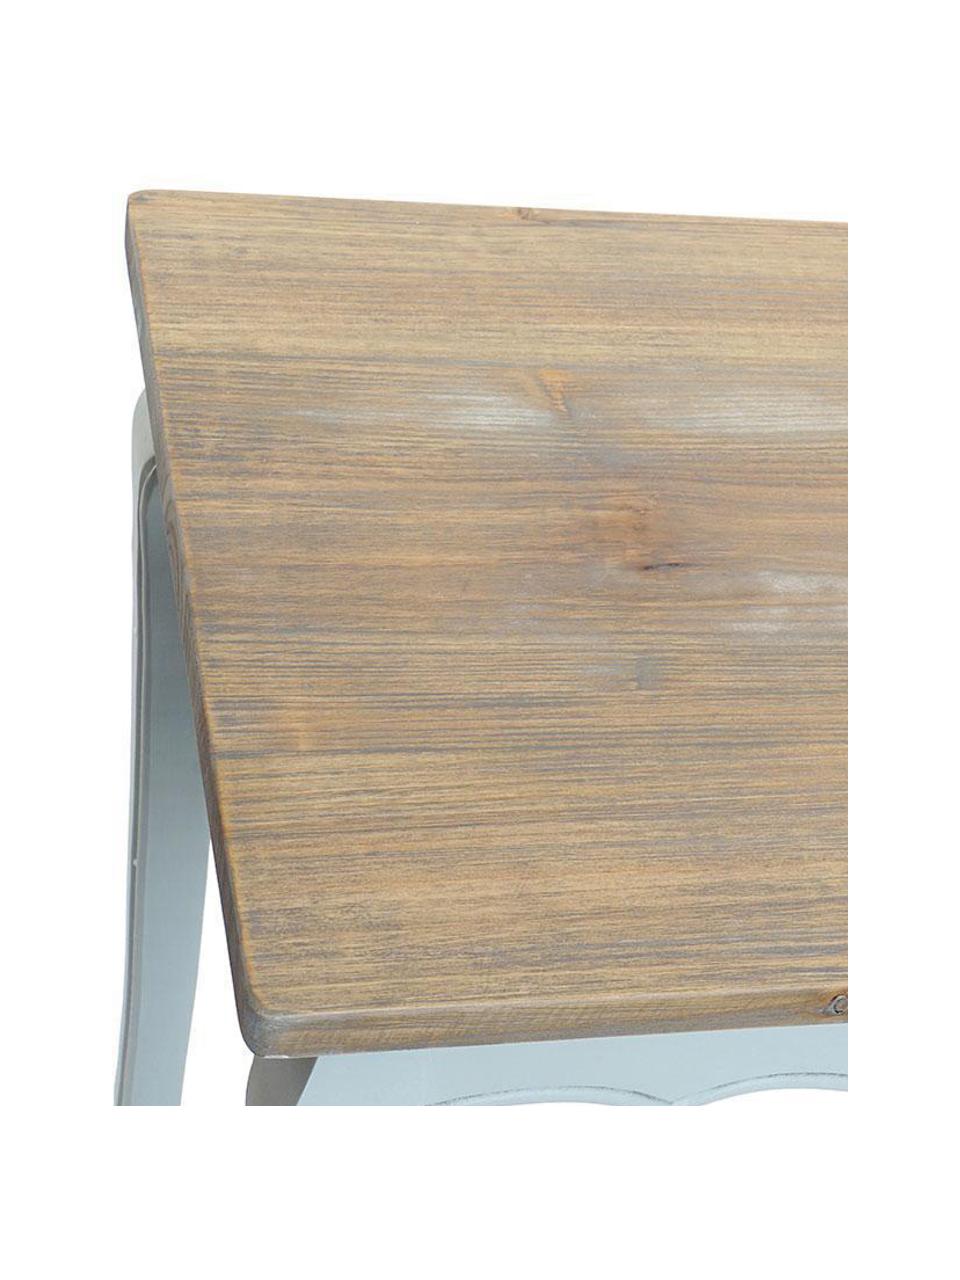 Set de mesas auxiliares Andy, 3 pzas., Tablero: fibras de densidad media , Tablero: madera de abeto, Gris, Set de diferentes tamaños